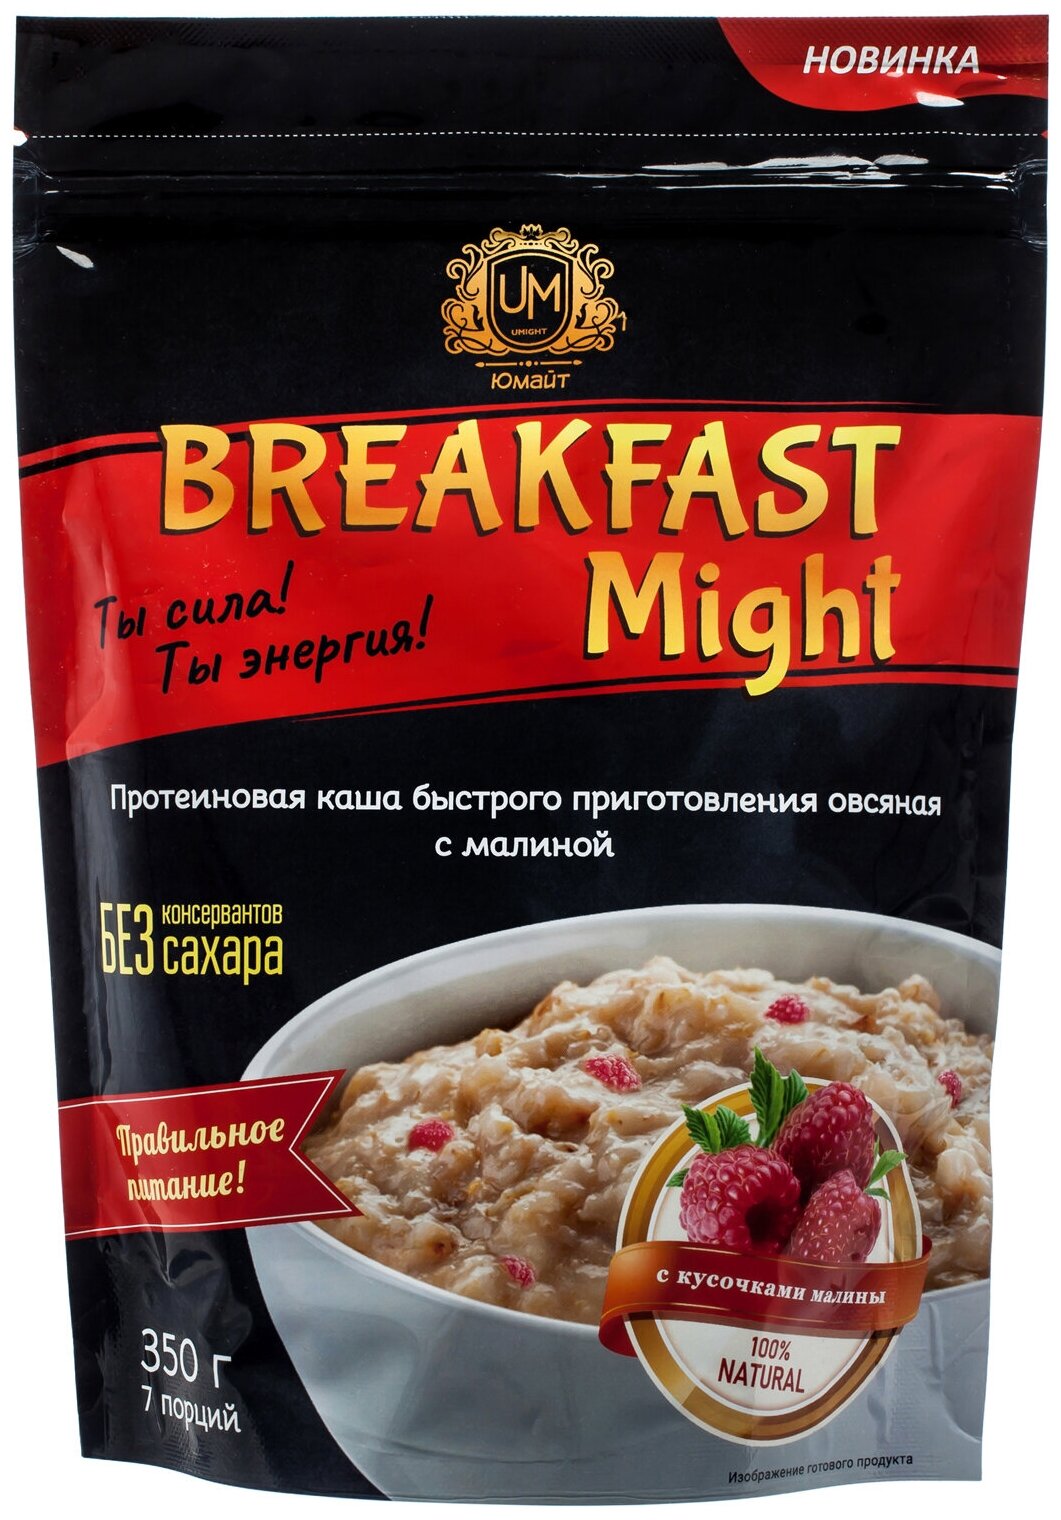 Протеиновая каша быстрого приготовления овсяная "Breakfast Might" с малиной, 350г